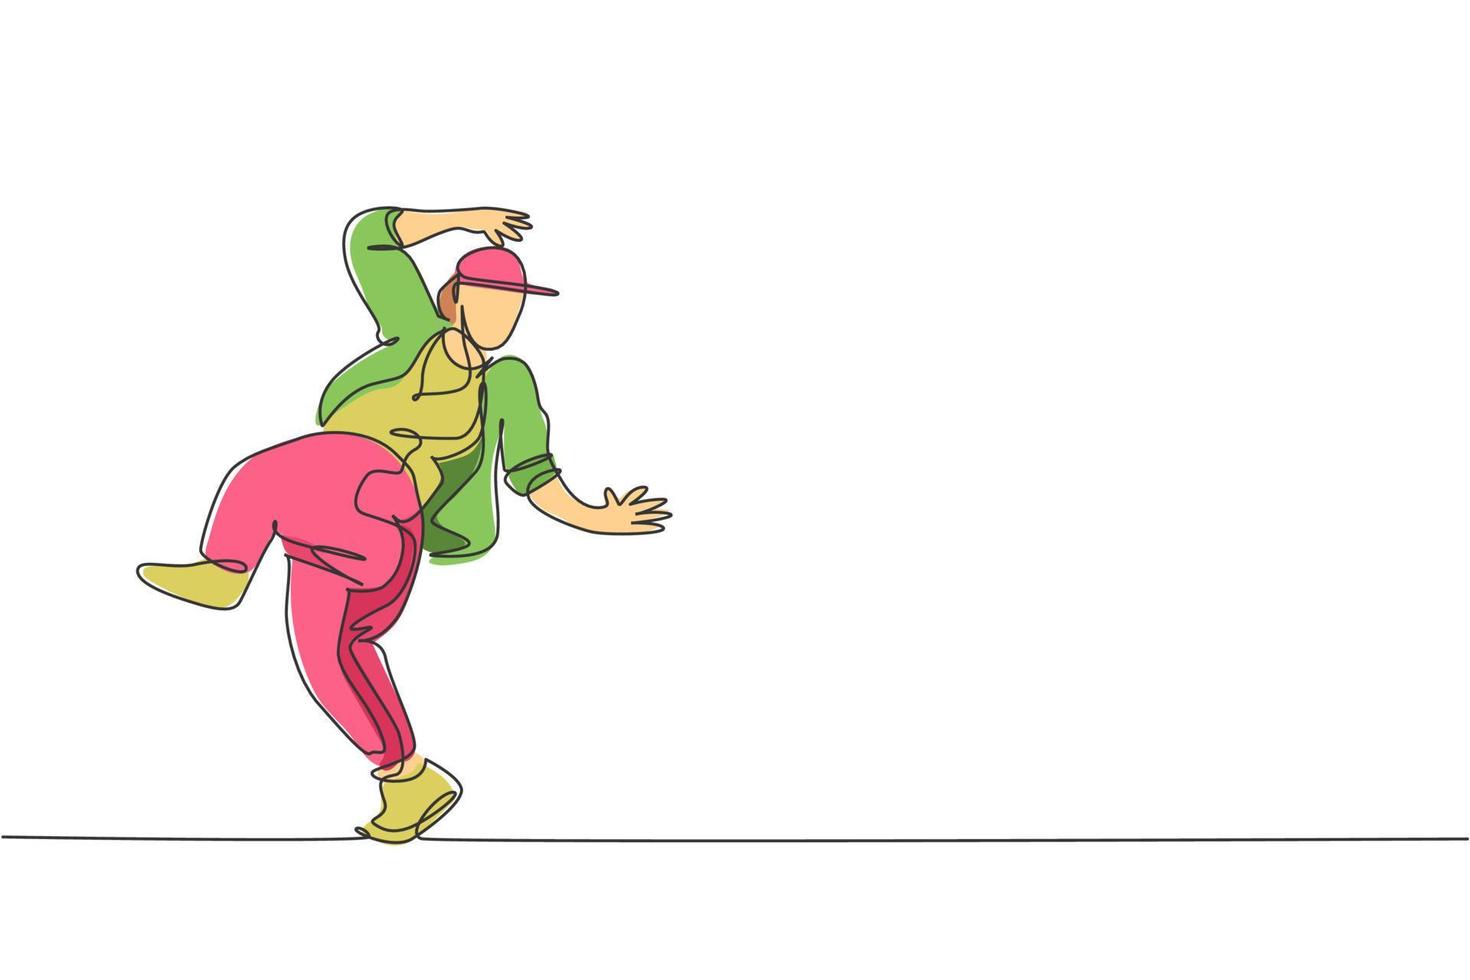 een enkele lijntekening jonge moderne straatdanser man met trainingspak hiphopdans uitvoeren op het podium vector grafische illustratie. stedelijke generatie levensstijl concept. ononderbroken lijntekening ontwerp